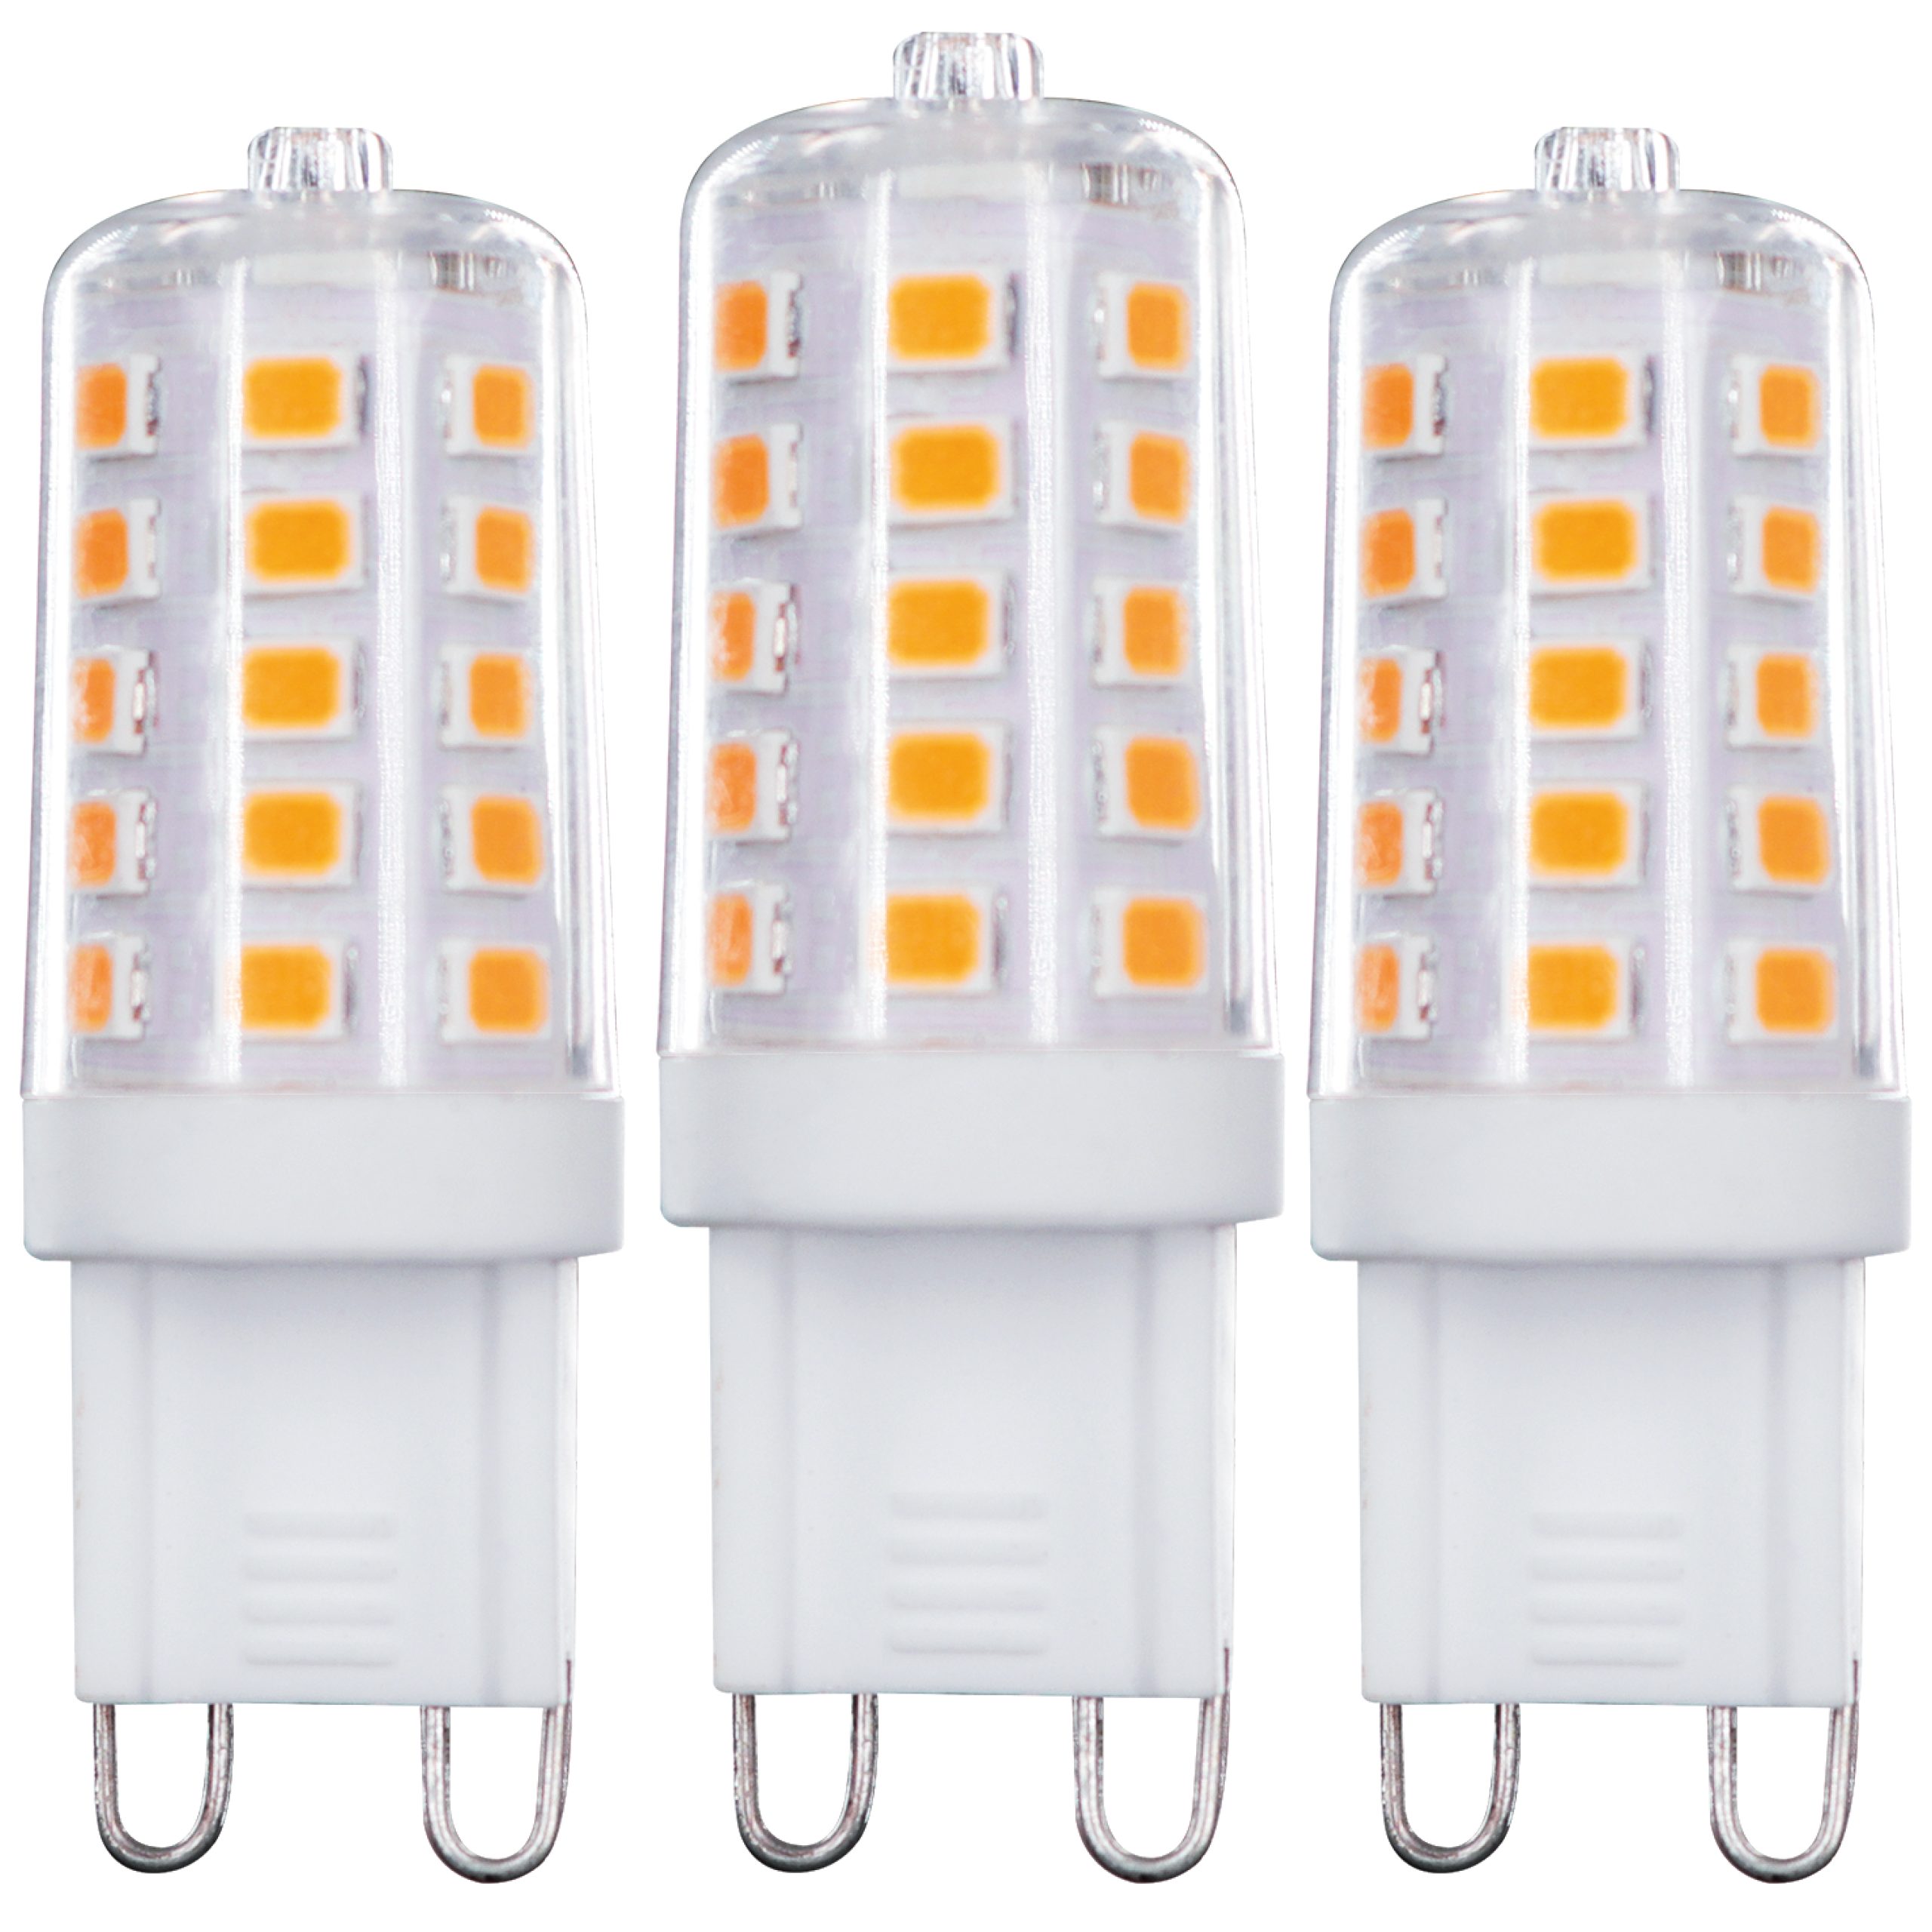 LED's light LED-Leuchtmittel 0620137 LED Kapsel, G9, G9 dimmbar 3.5W warmweiß Klar 3-Pack